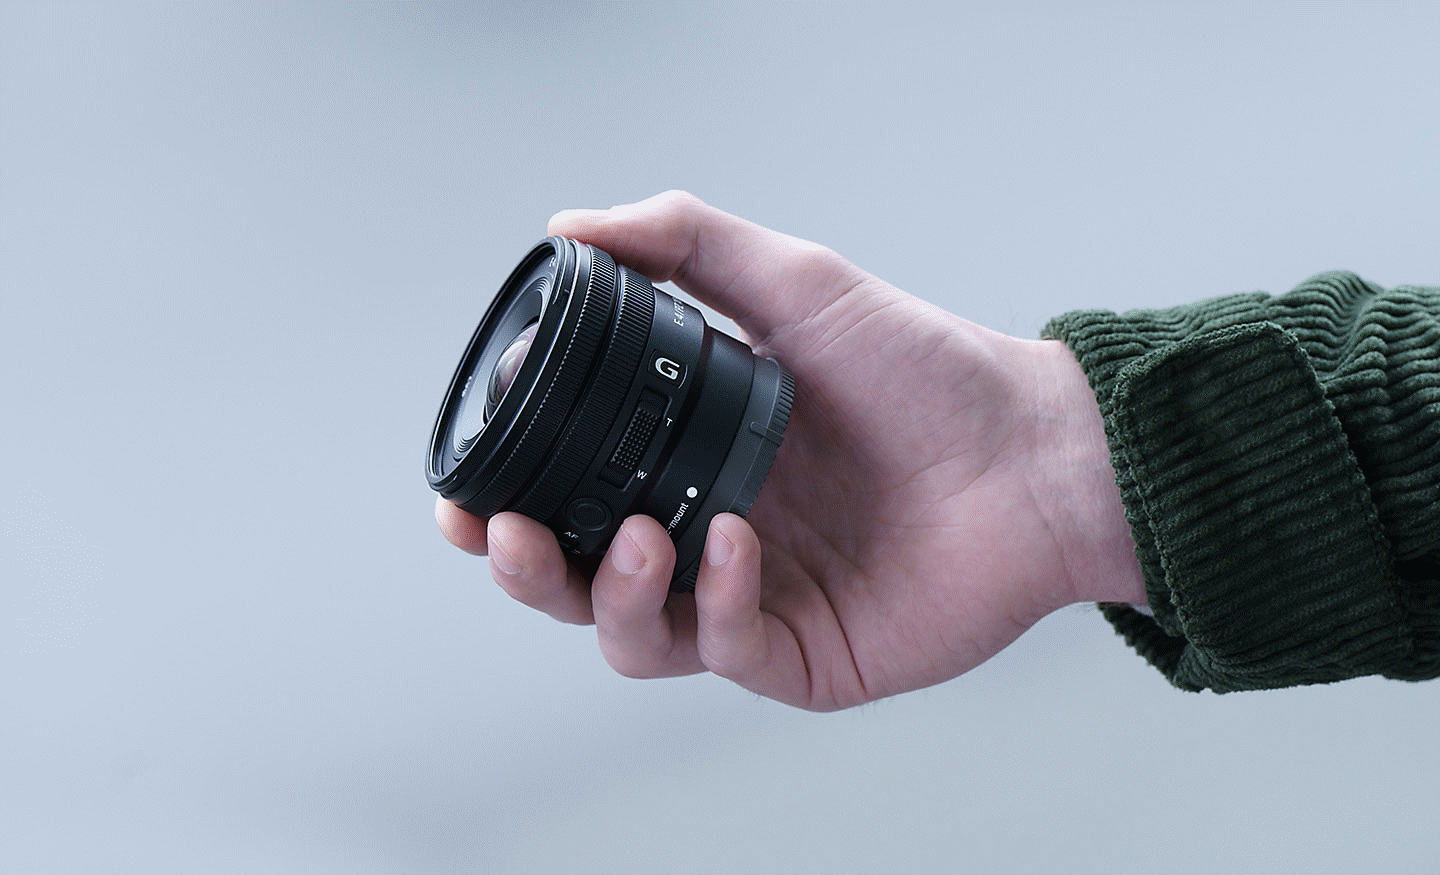 Slika ruke koja drži objektiv E PZ 10-20mm F4 G, na kojoj se vidi da je objektiv dovoljno mali da stane u nju